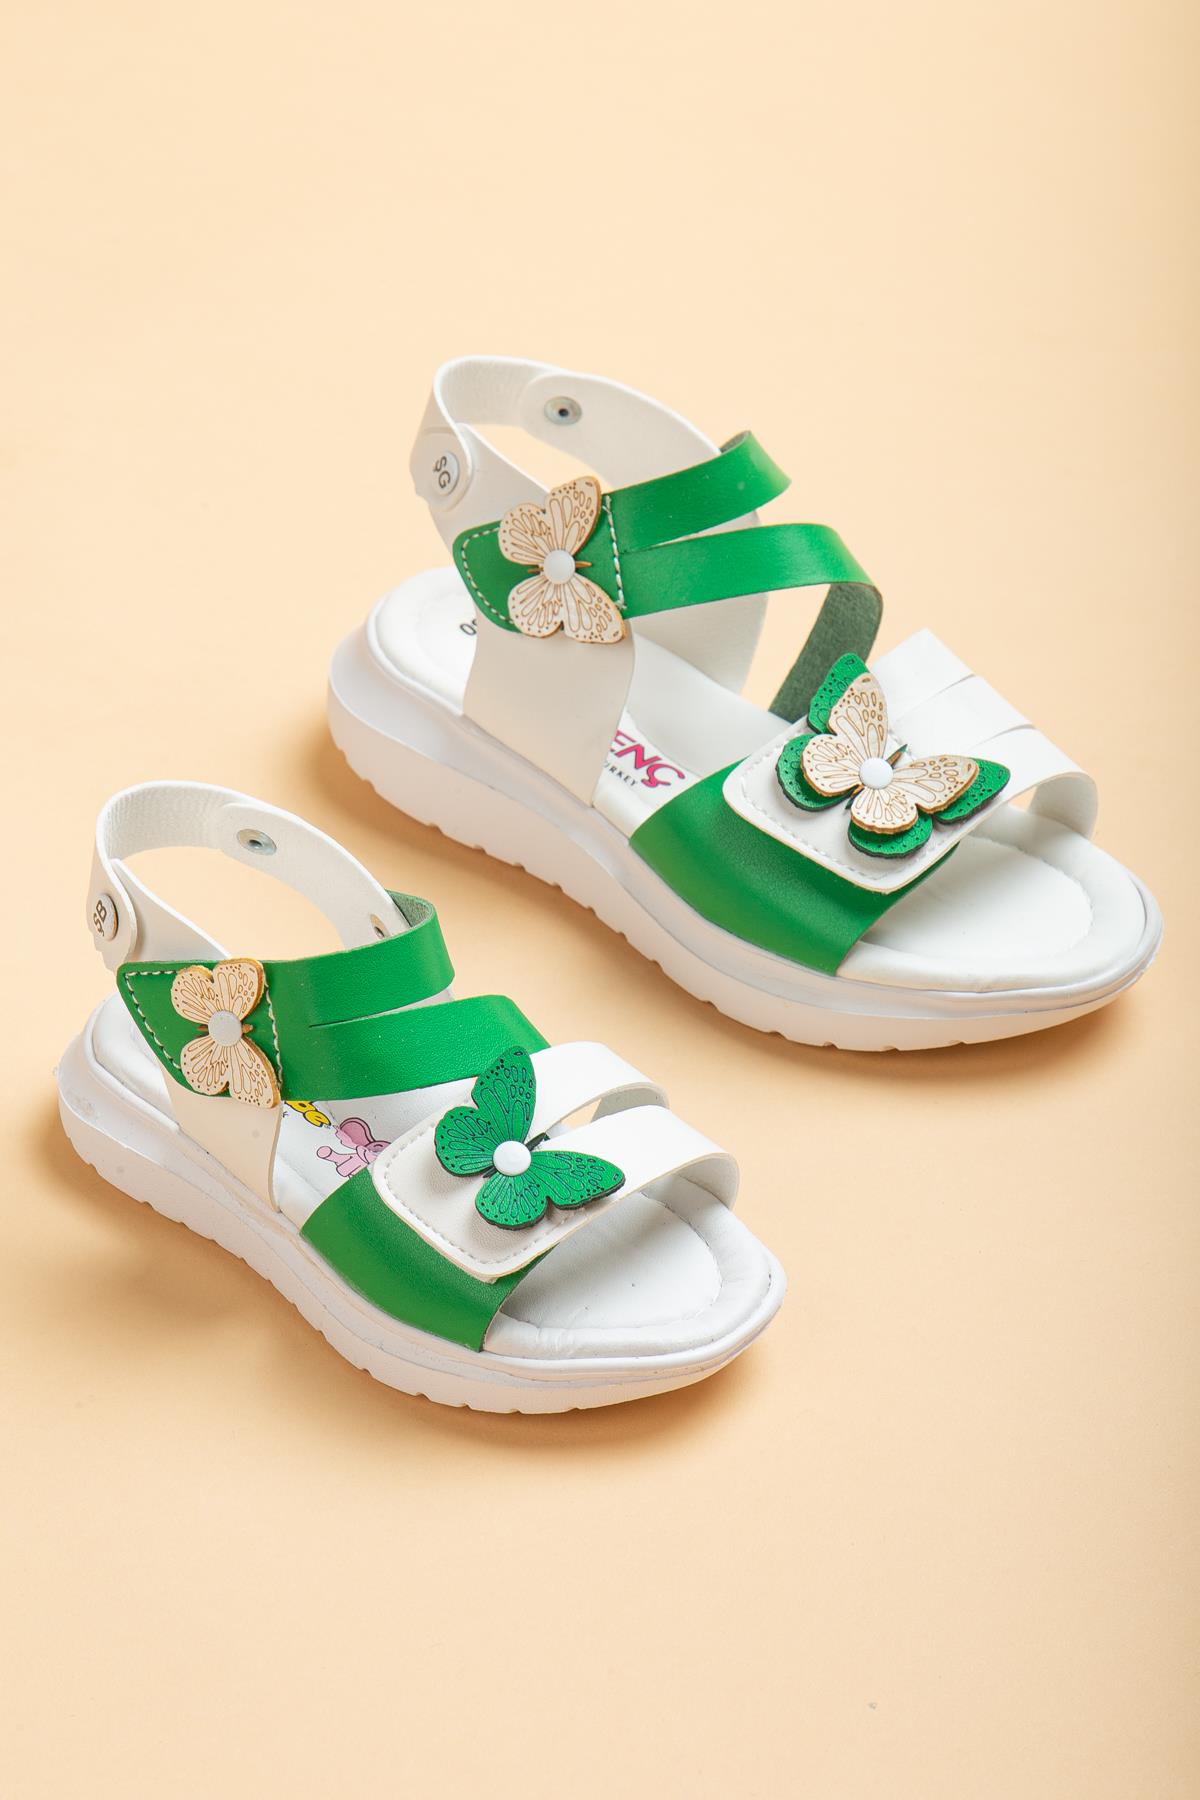 Şirinbebe Şiringenç Kelebek Model Yeşil Kız Bebek Çocuk Sandalet-2315-Yeşil